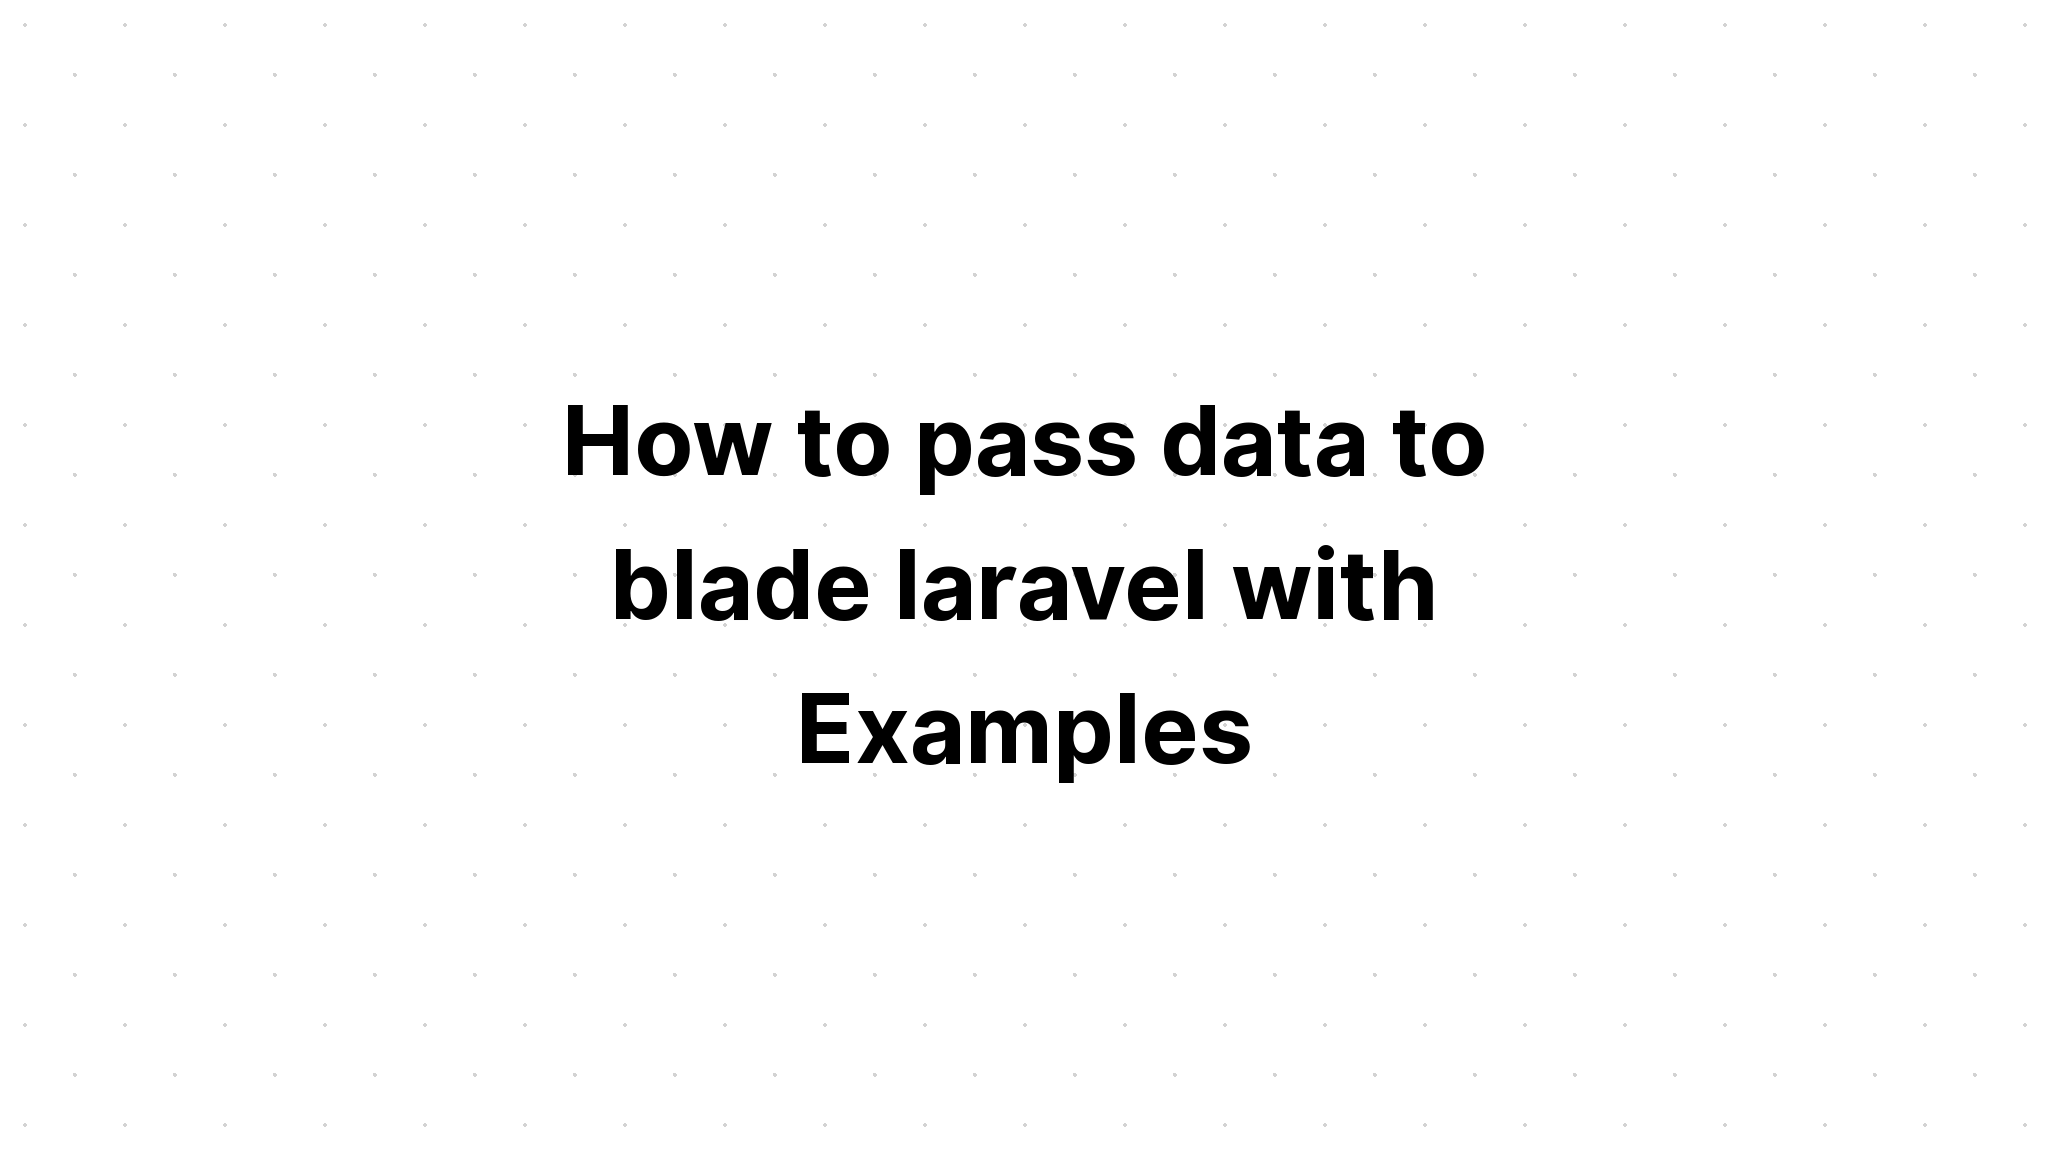 Cách truyền dữ liệu cho blade laravel với các ví dụ